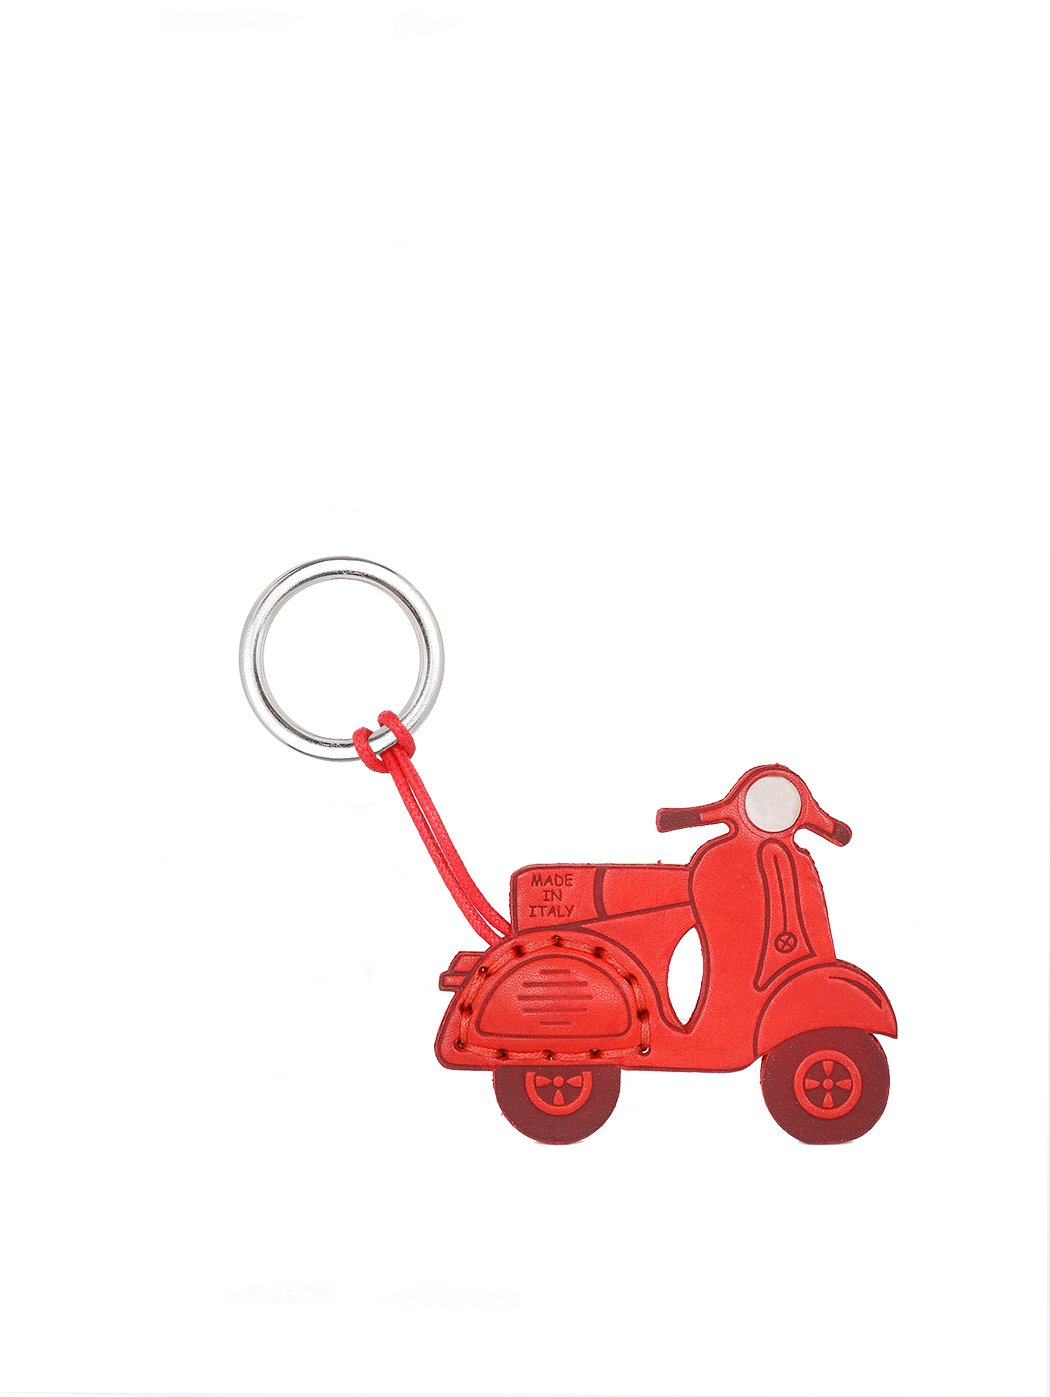 钥匙扣-Vespa摩托车 红色